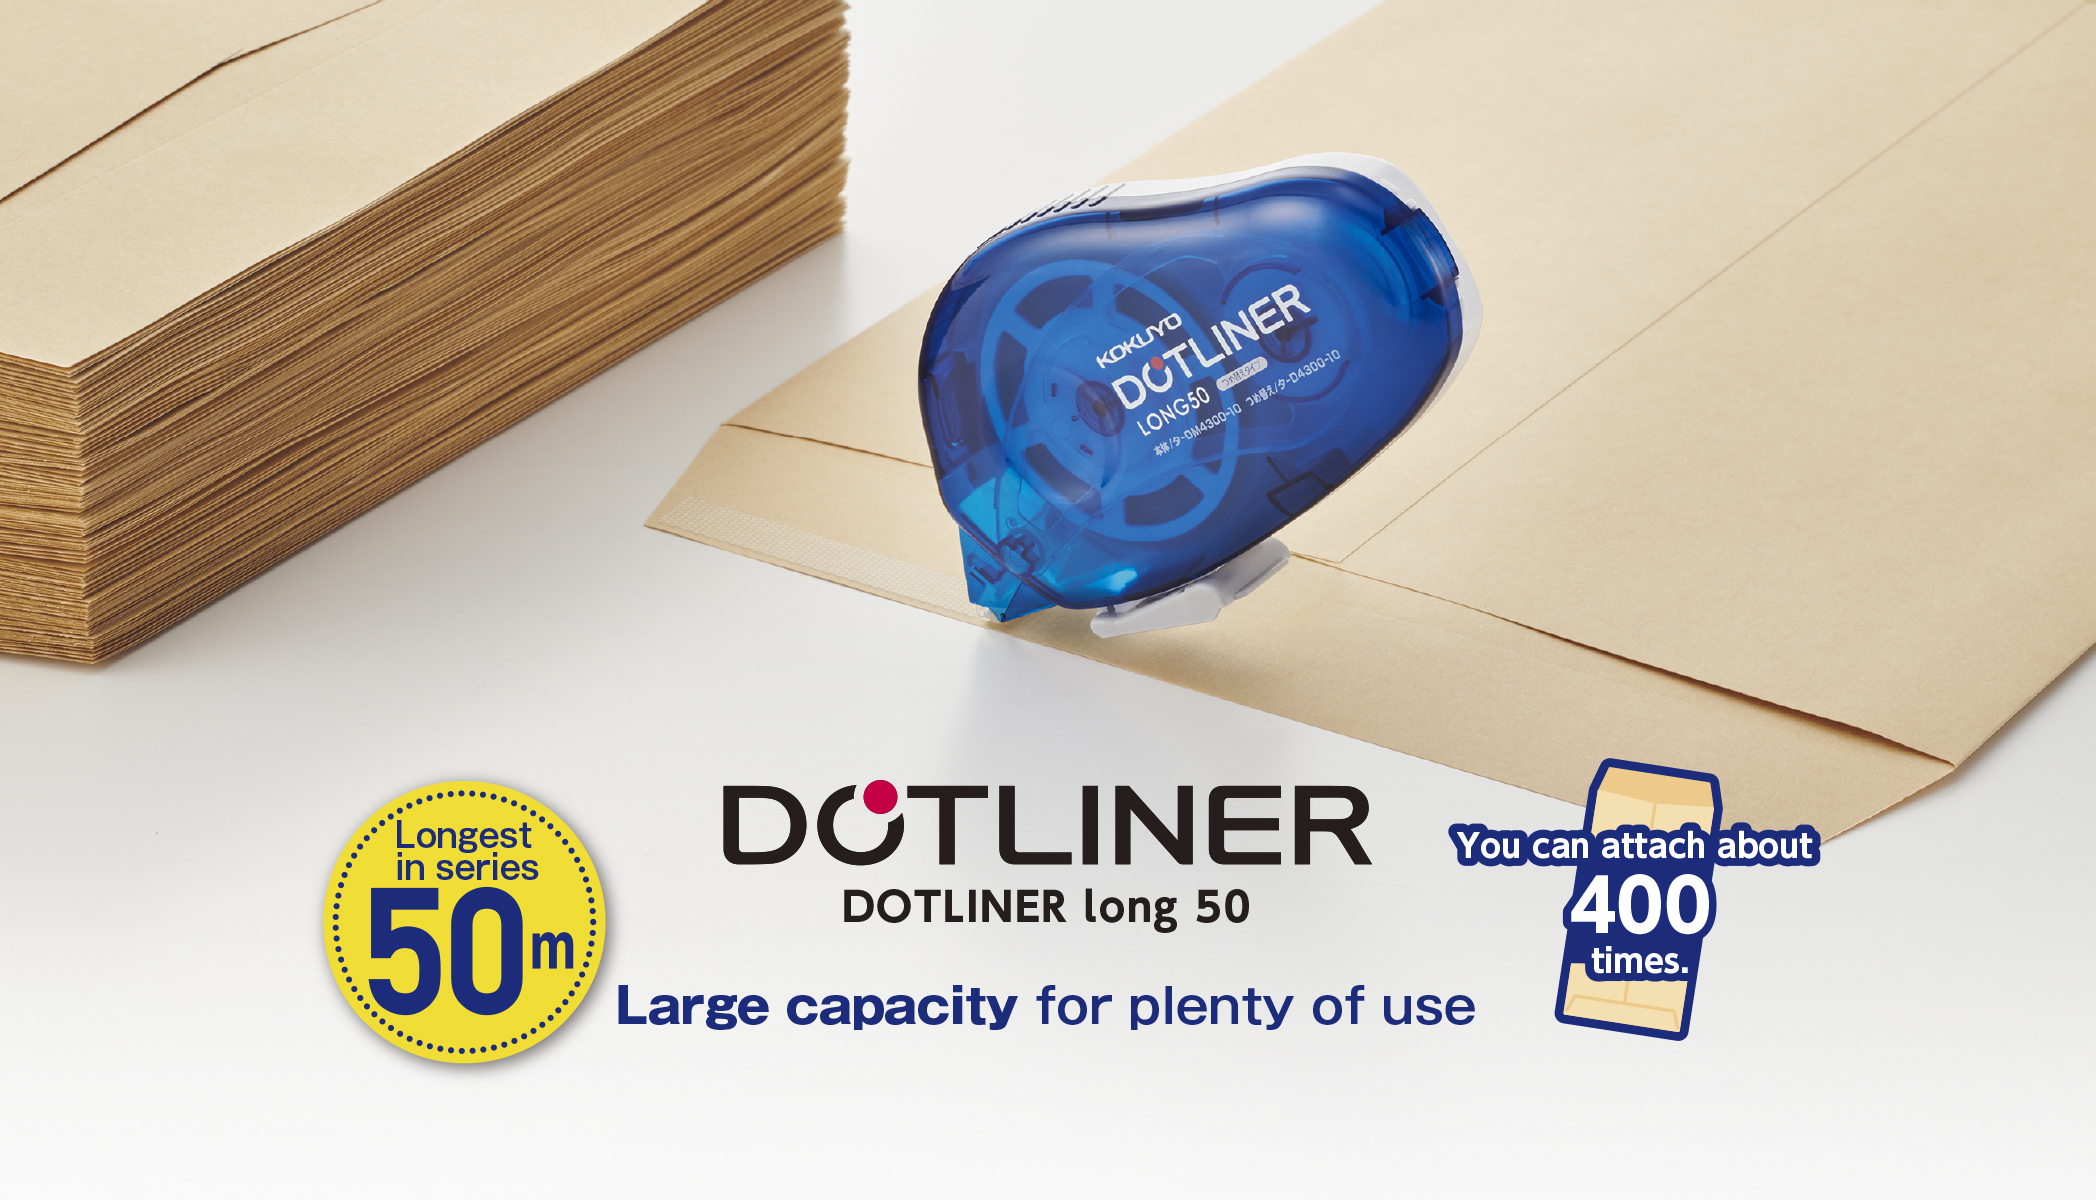 Dot liner long 50